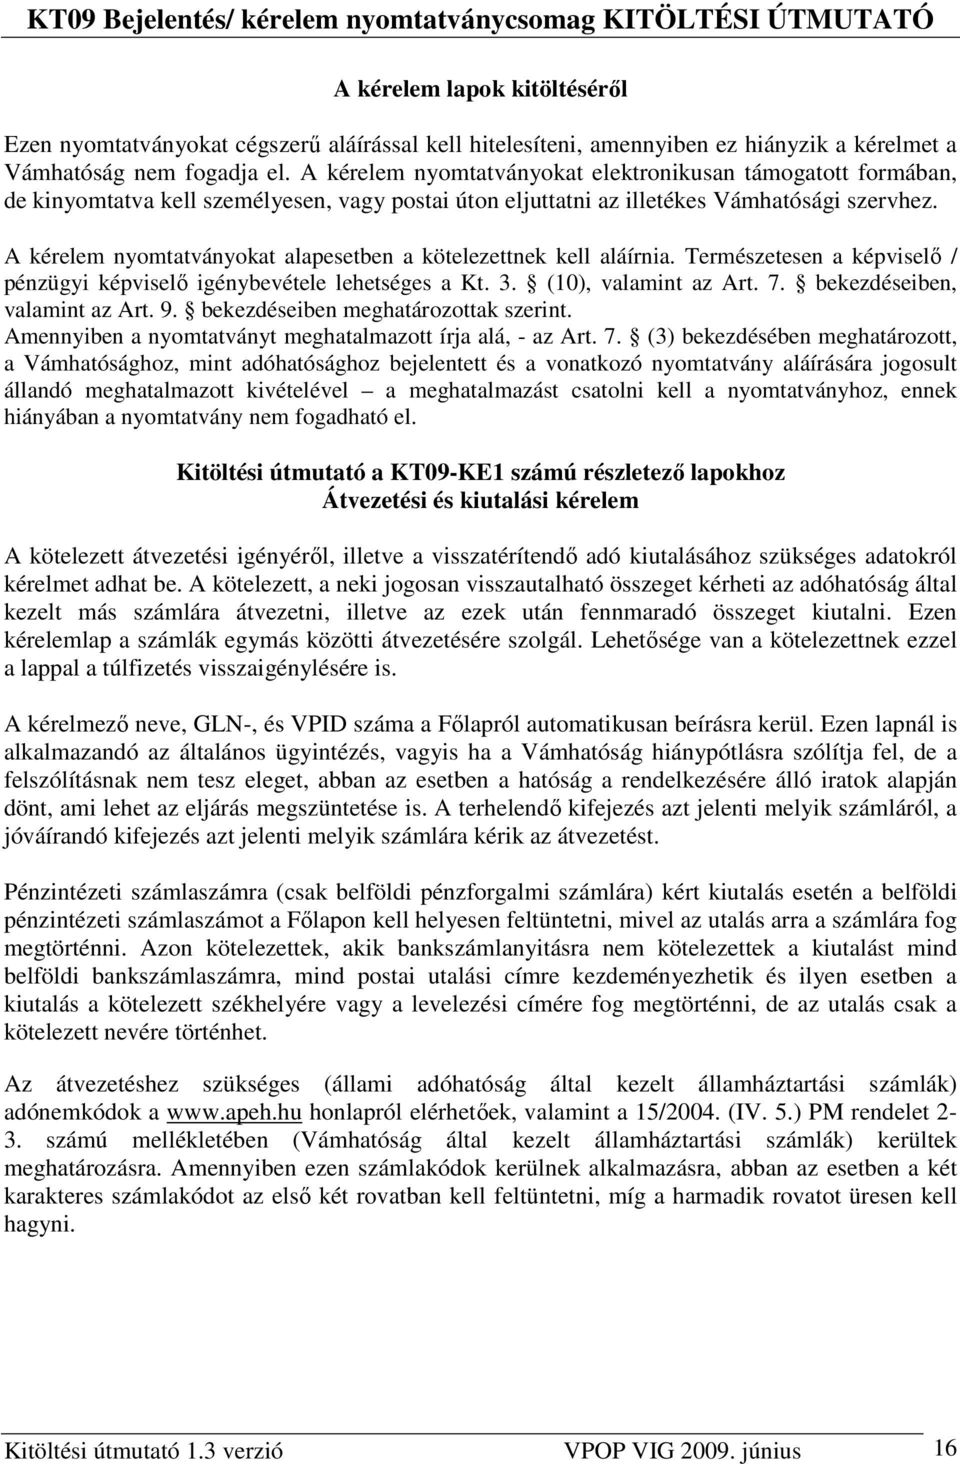 A kérelem nyomtatványokat alapesetben a kötelezettnek kell aláírnia. Természetesen a képviselı / pénzügyi képviselı igénybevétele lehetséges a Kt. 3. (10), valamint az Art. 7.